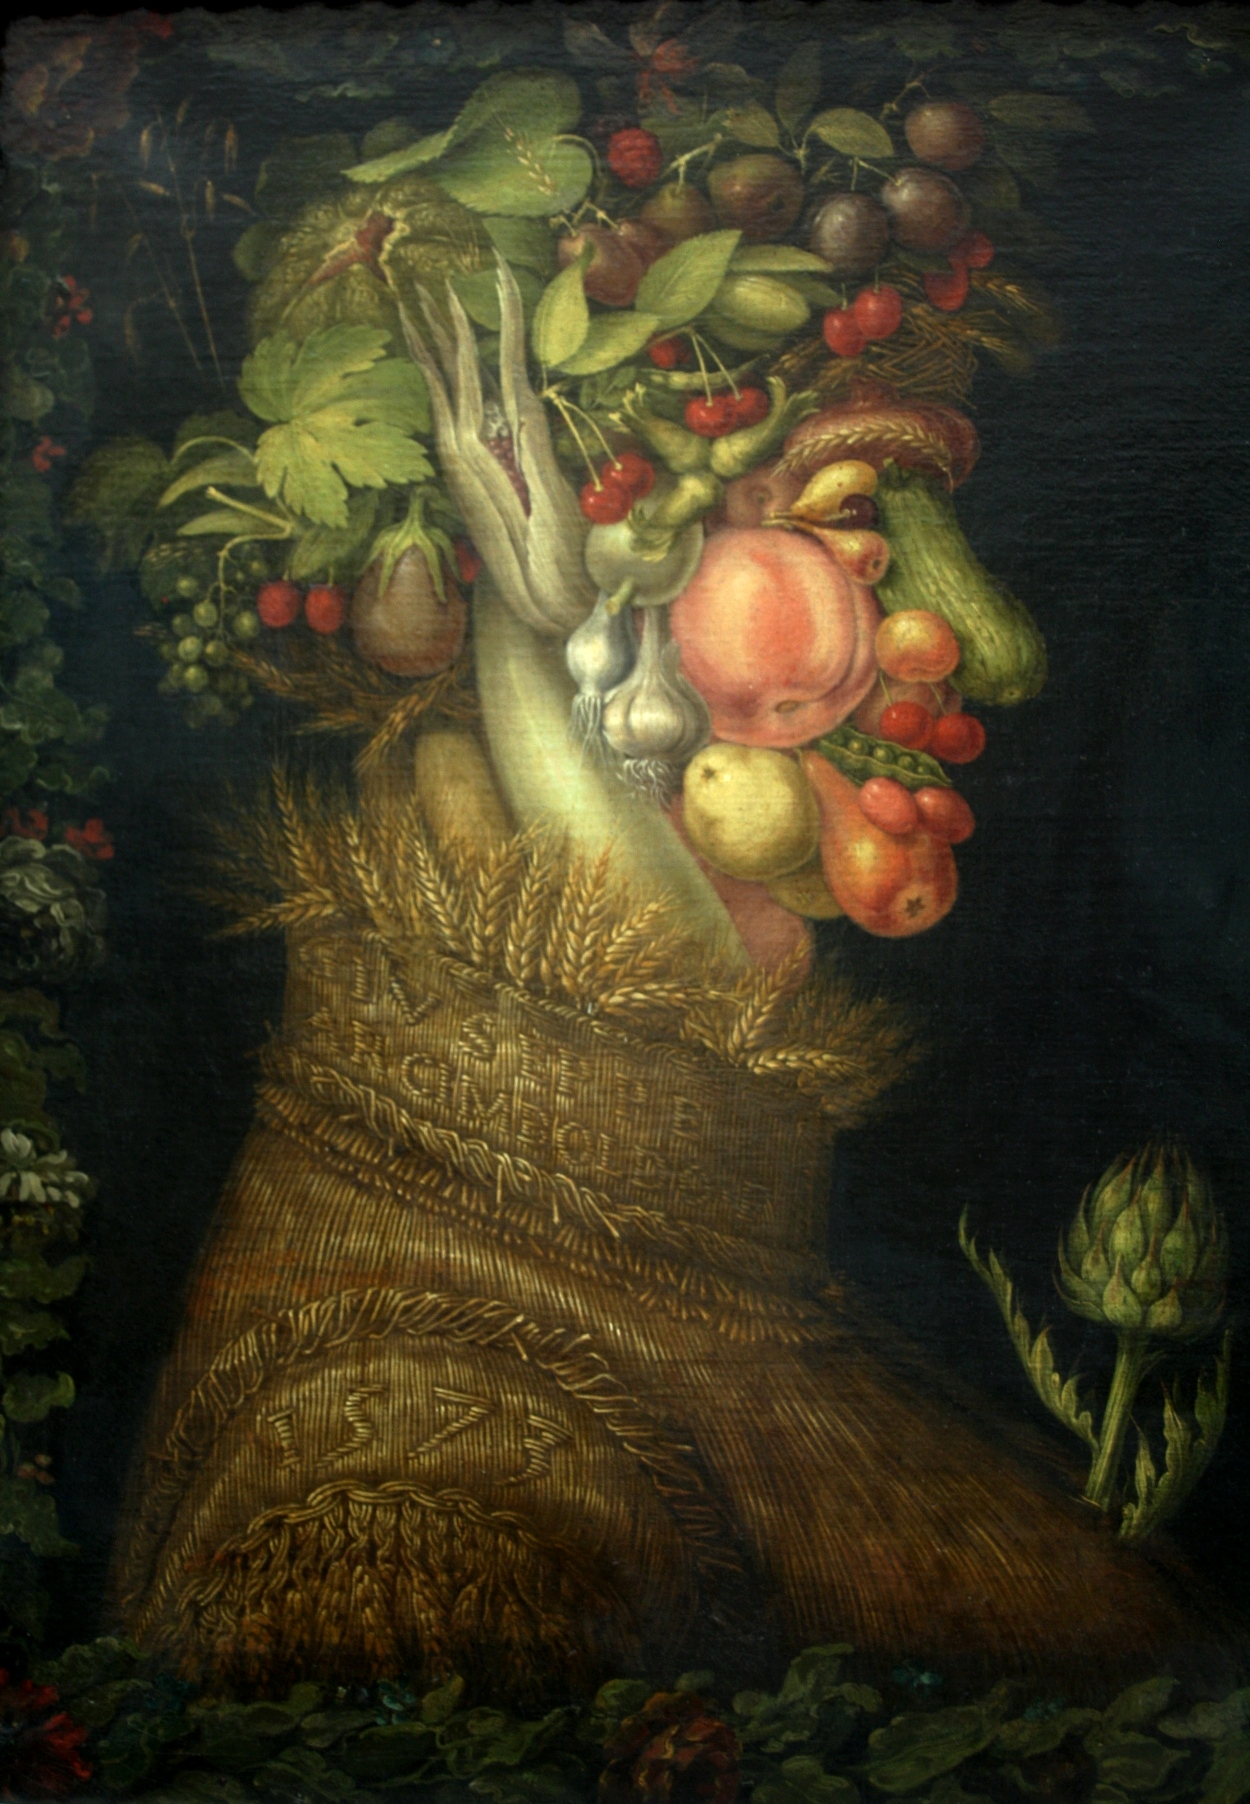 L’Été, d’Arcimboldo (1563), où l’aubergine fait office d’oreille... Musée du Louvre Paris - © J.-F. Coffin